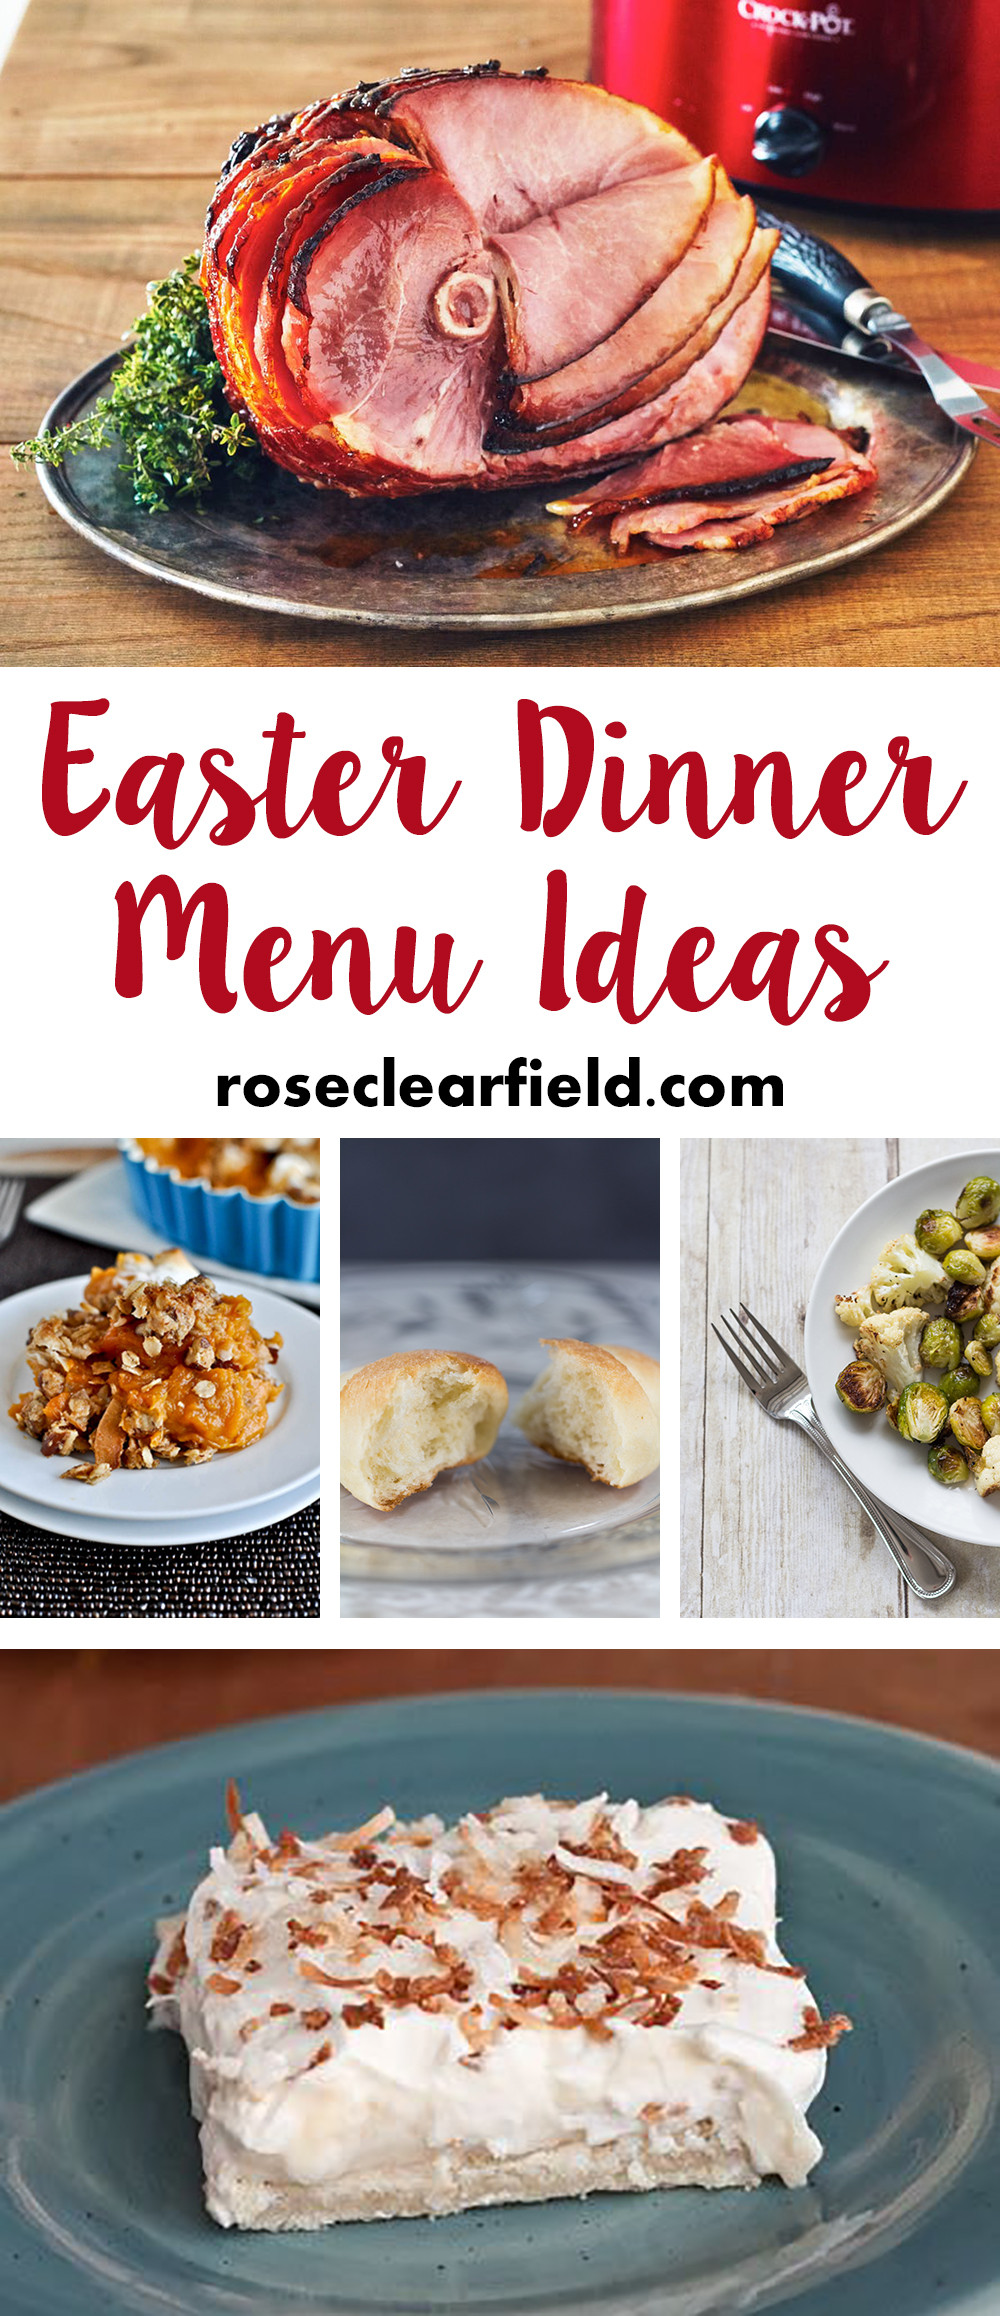 Easter Dinner Menus Ideas
 Easter Dinner Menu Ideas • Rose Clearfield